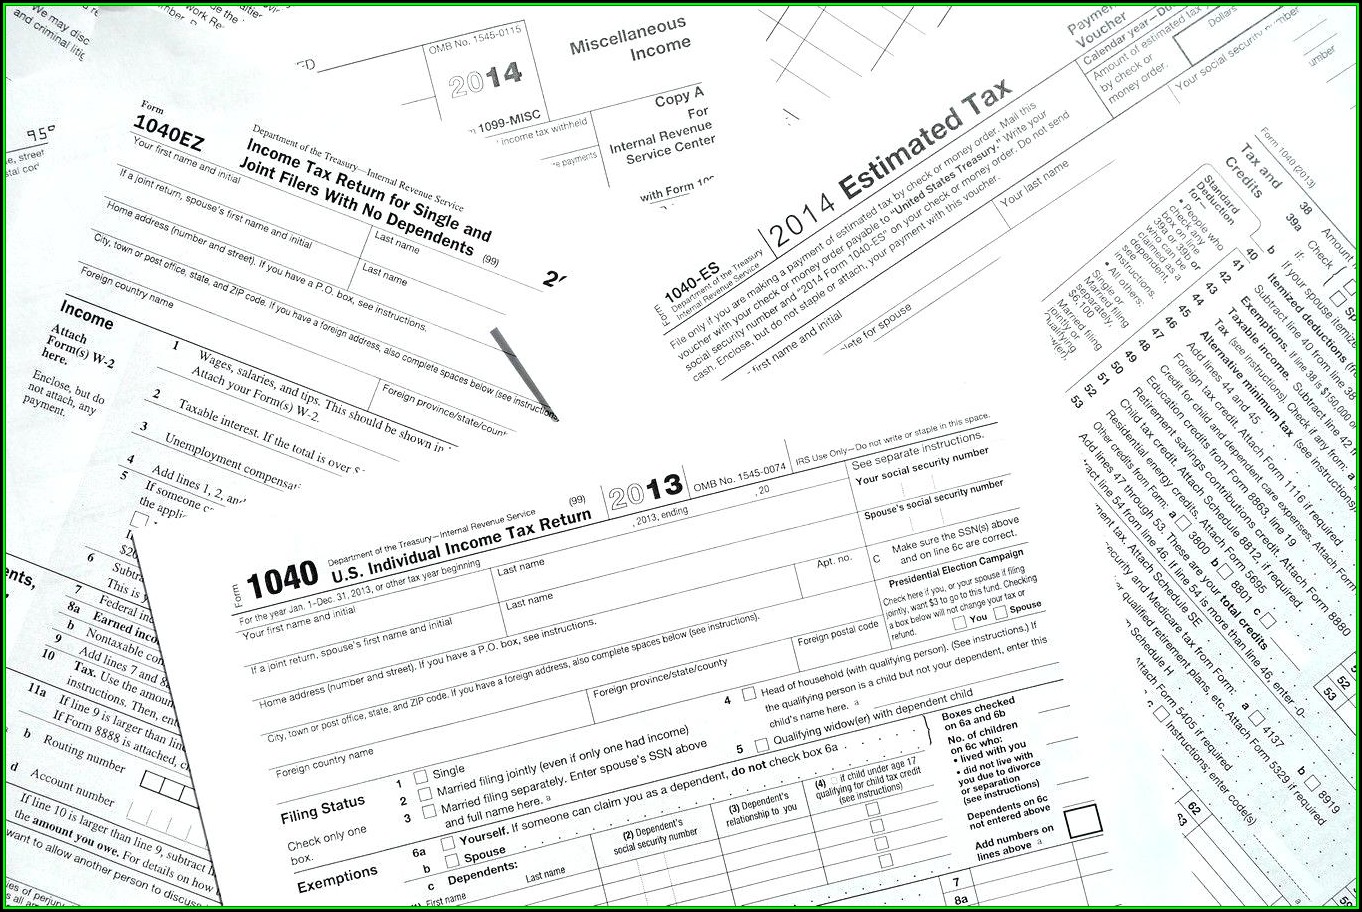 2013 Tax Return Form 1040a